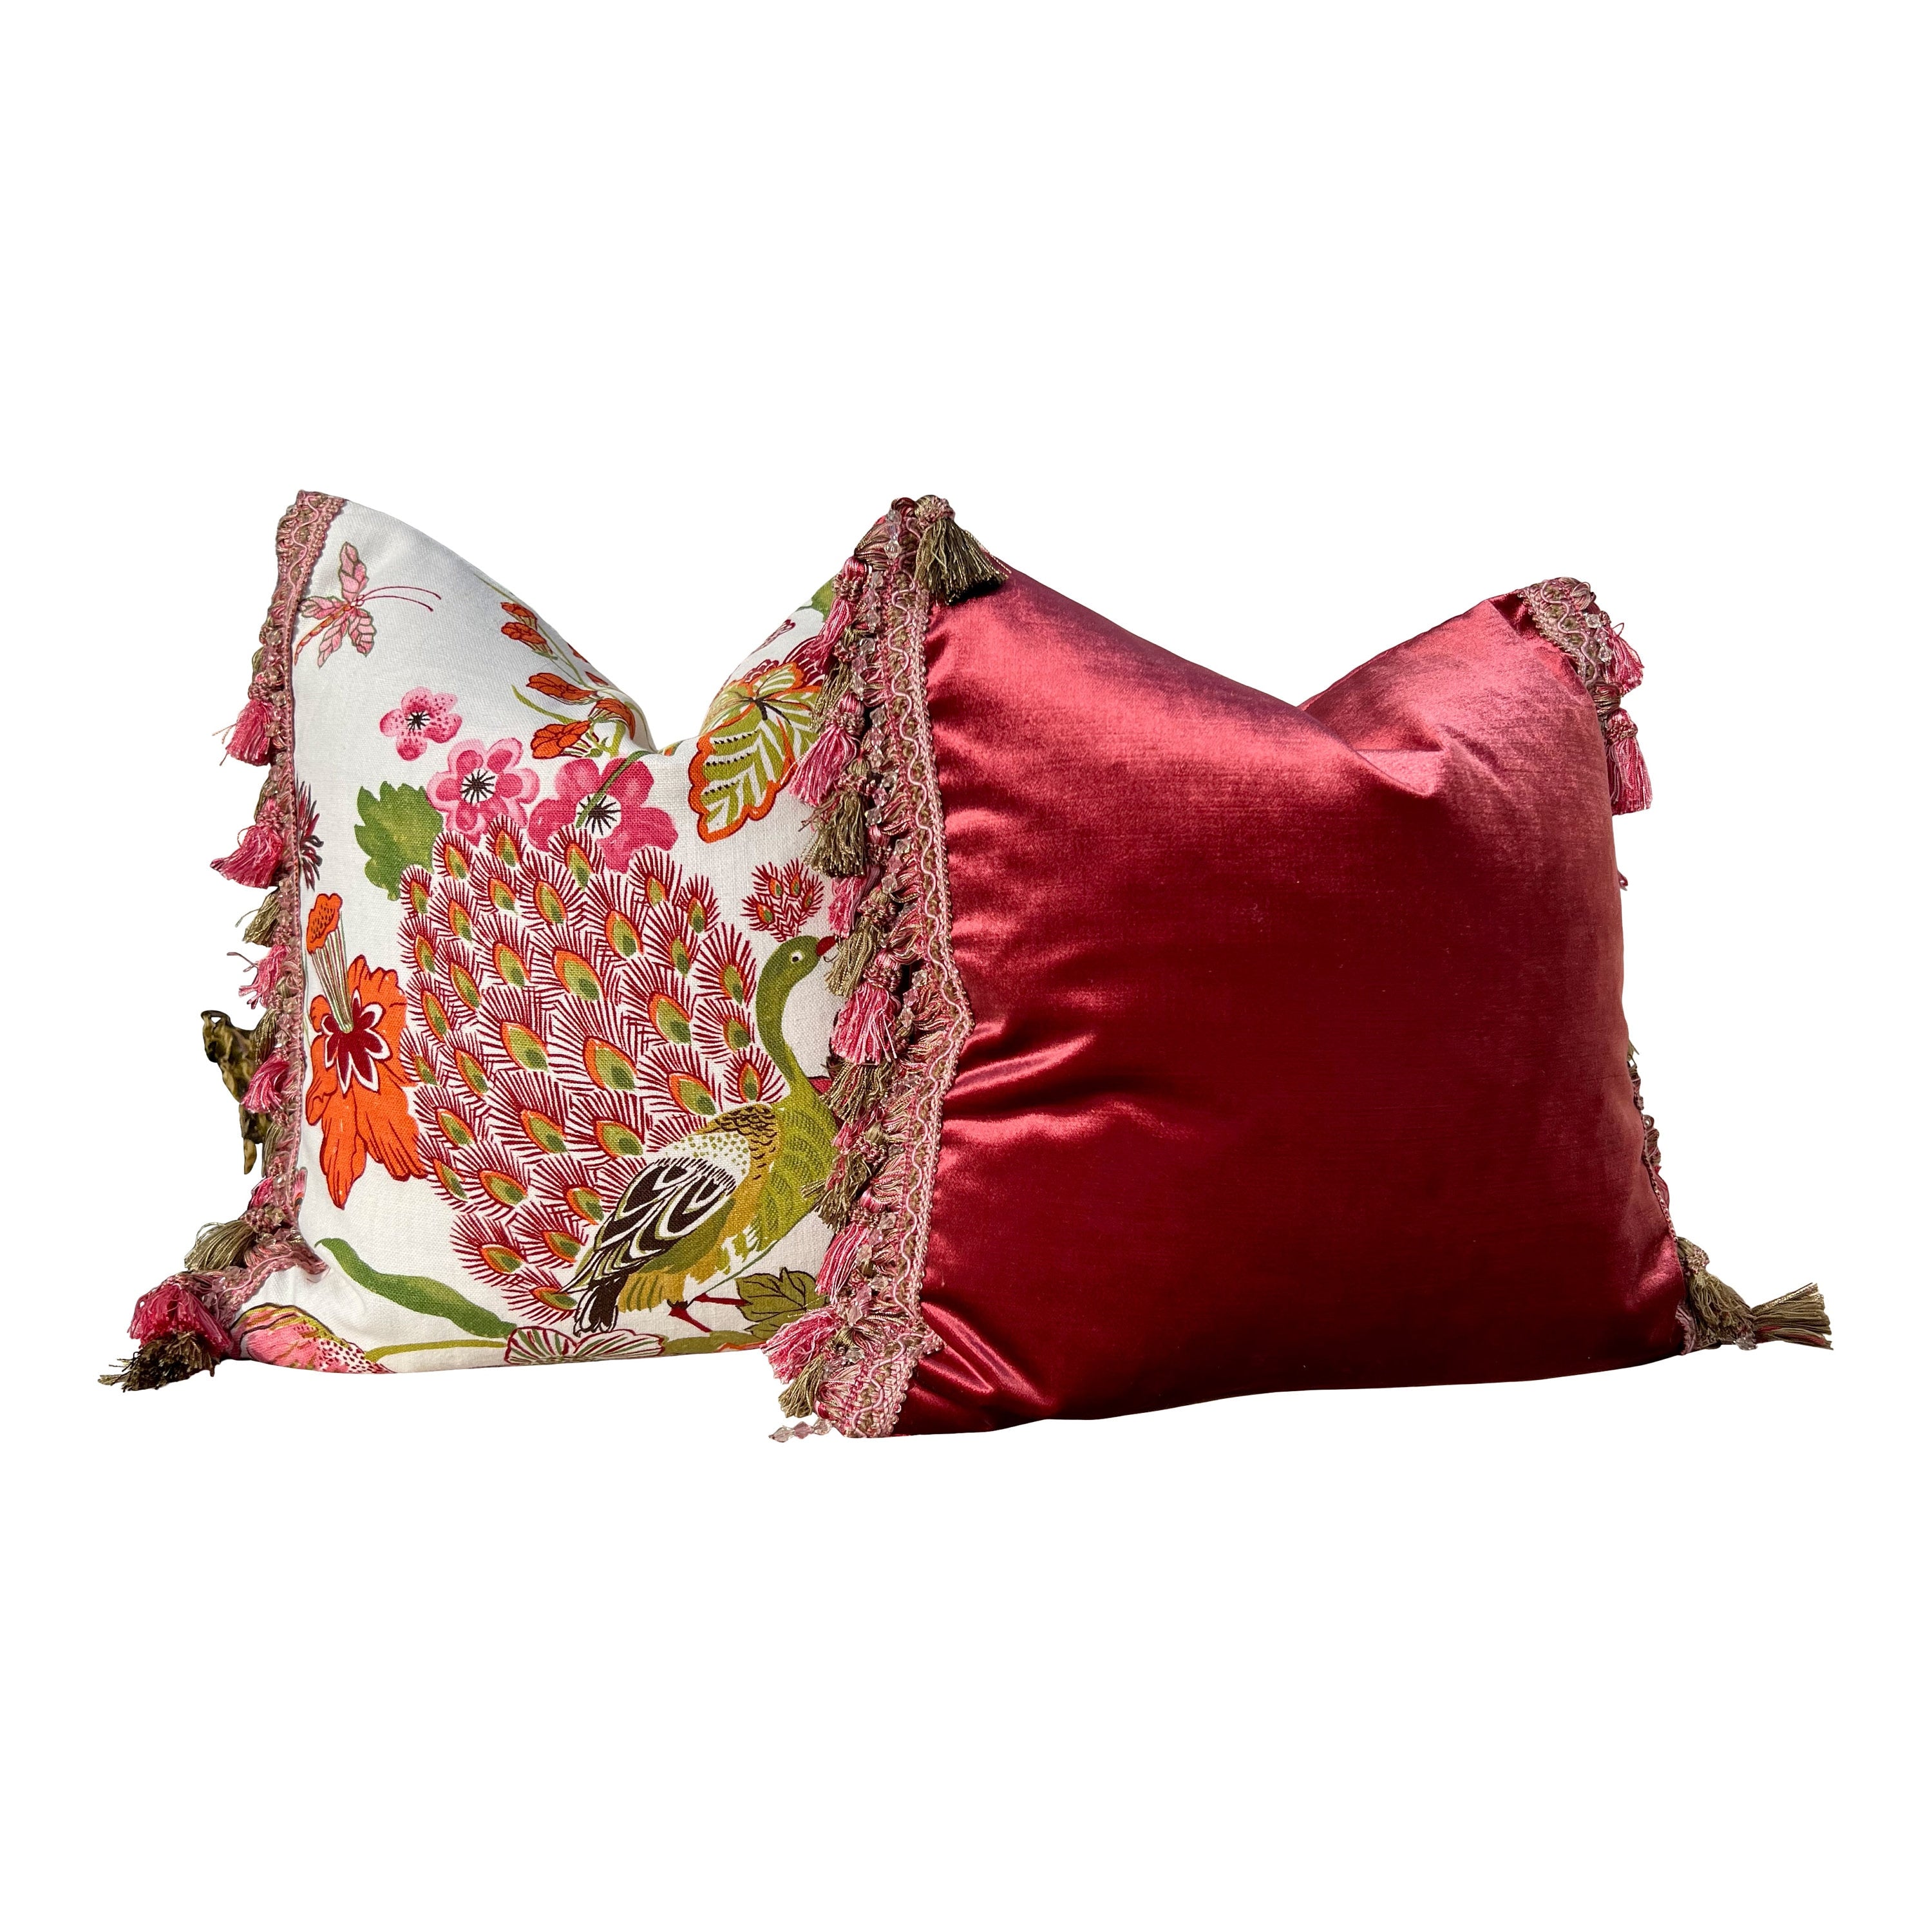 Designer Velvet Pillow in Ruby Red Color with Tassel Trim. Designer Velvet Pillows, High End Pillows, Navy Accent Lumbar Pillow Velvet Sham